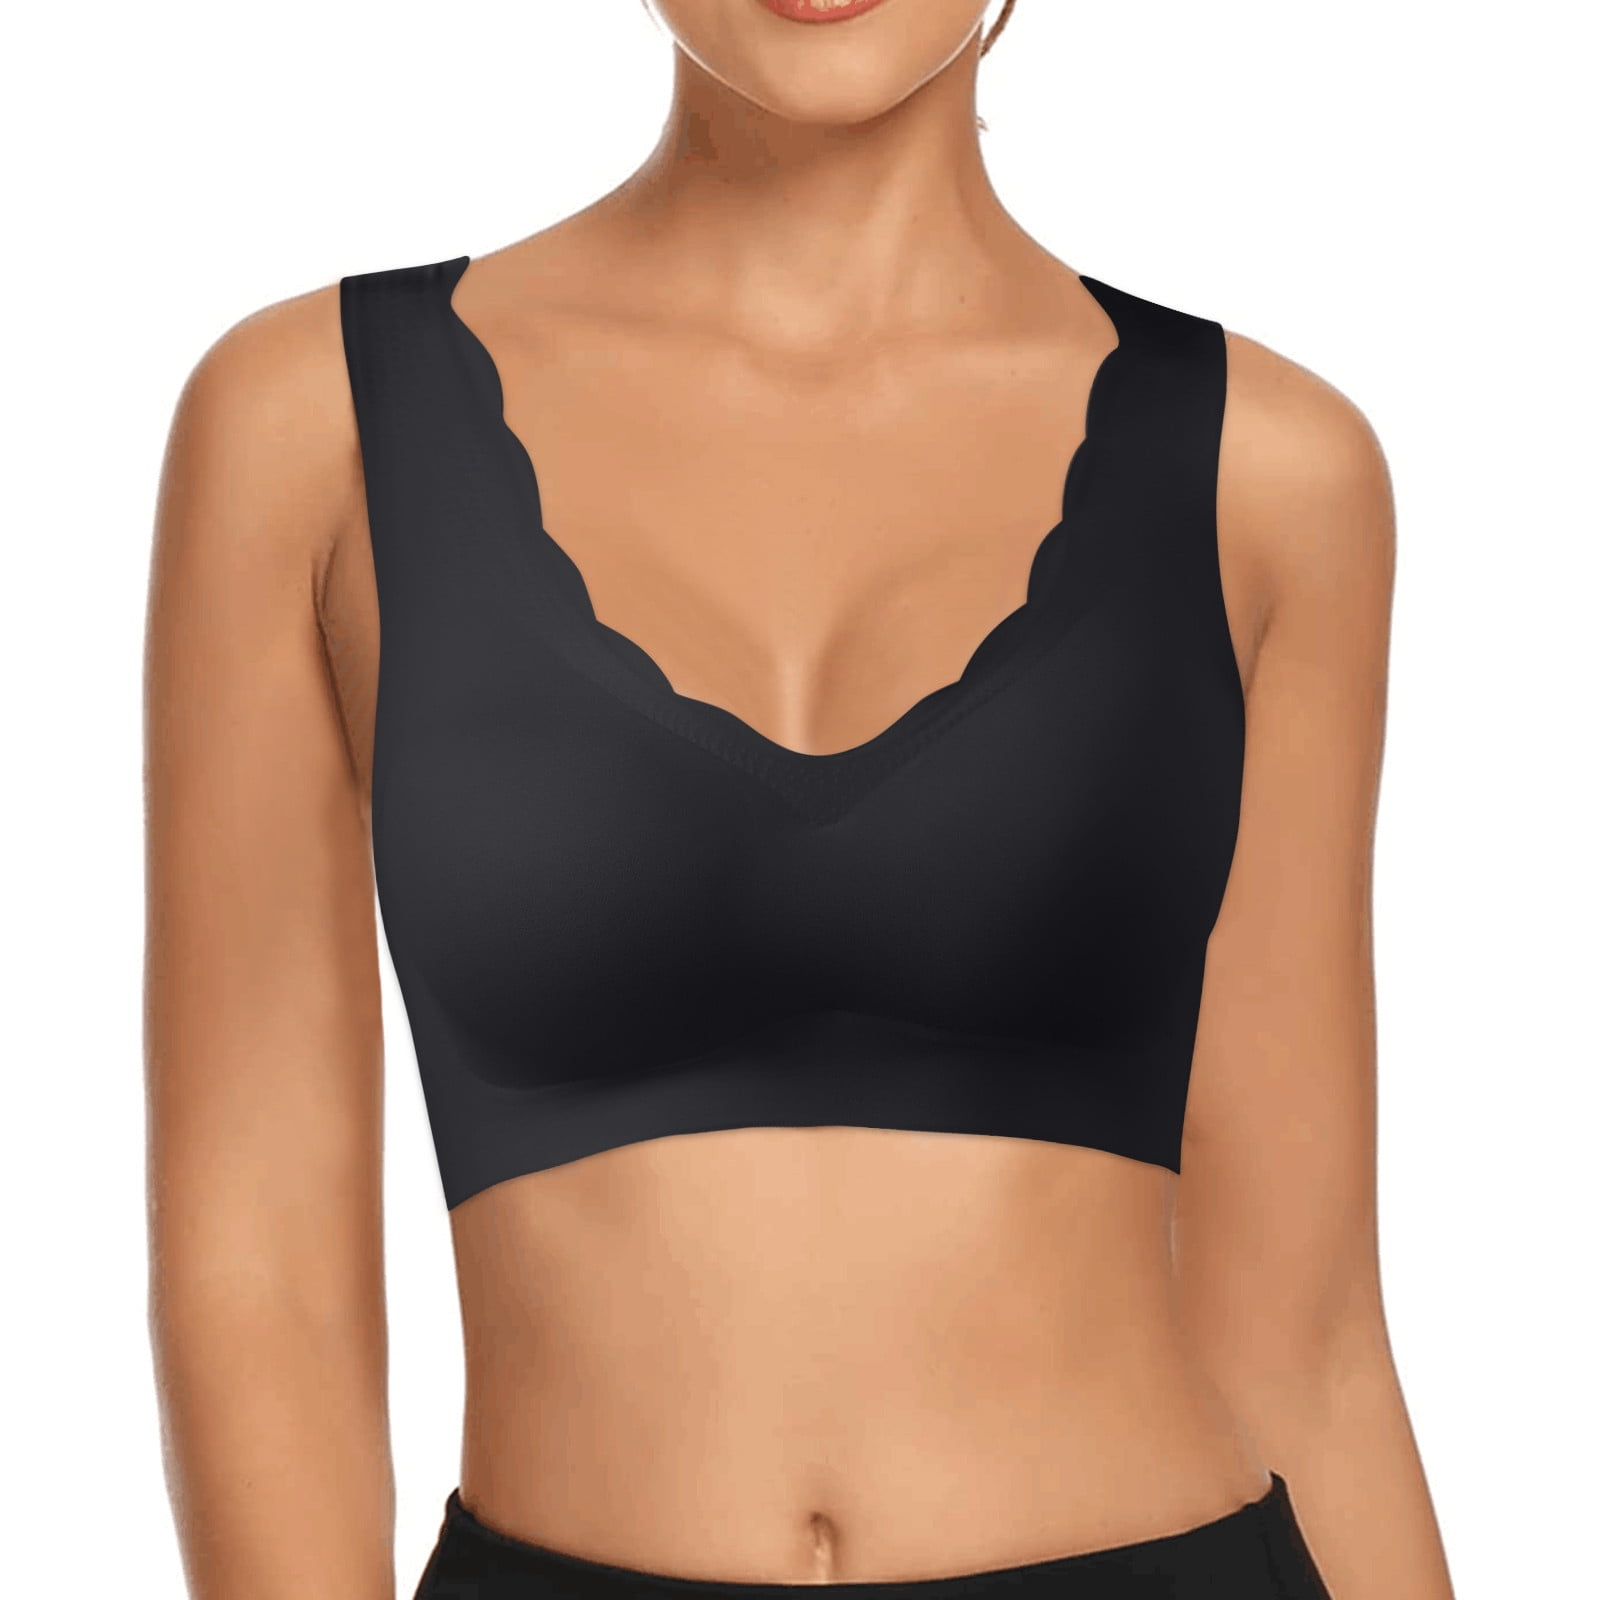 Zuwimk Sports Bras For Women,Women's Motive Cotton Lightly Lined Bralette  Bra Black,XL